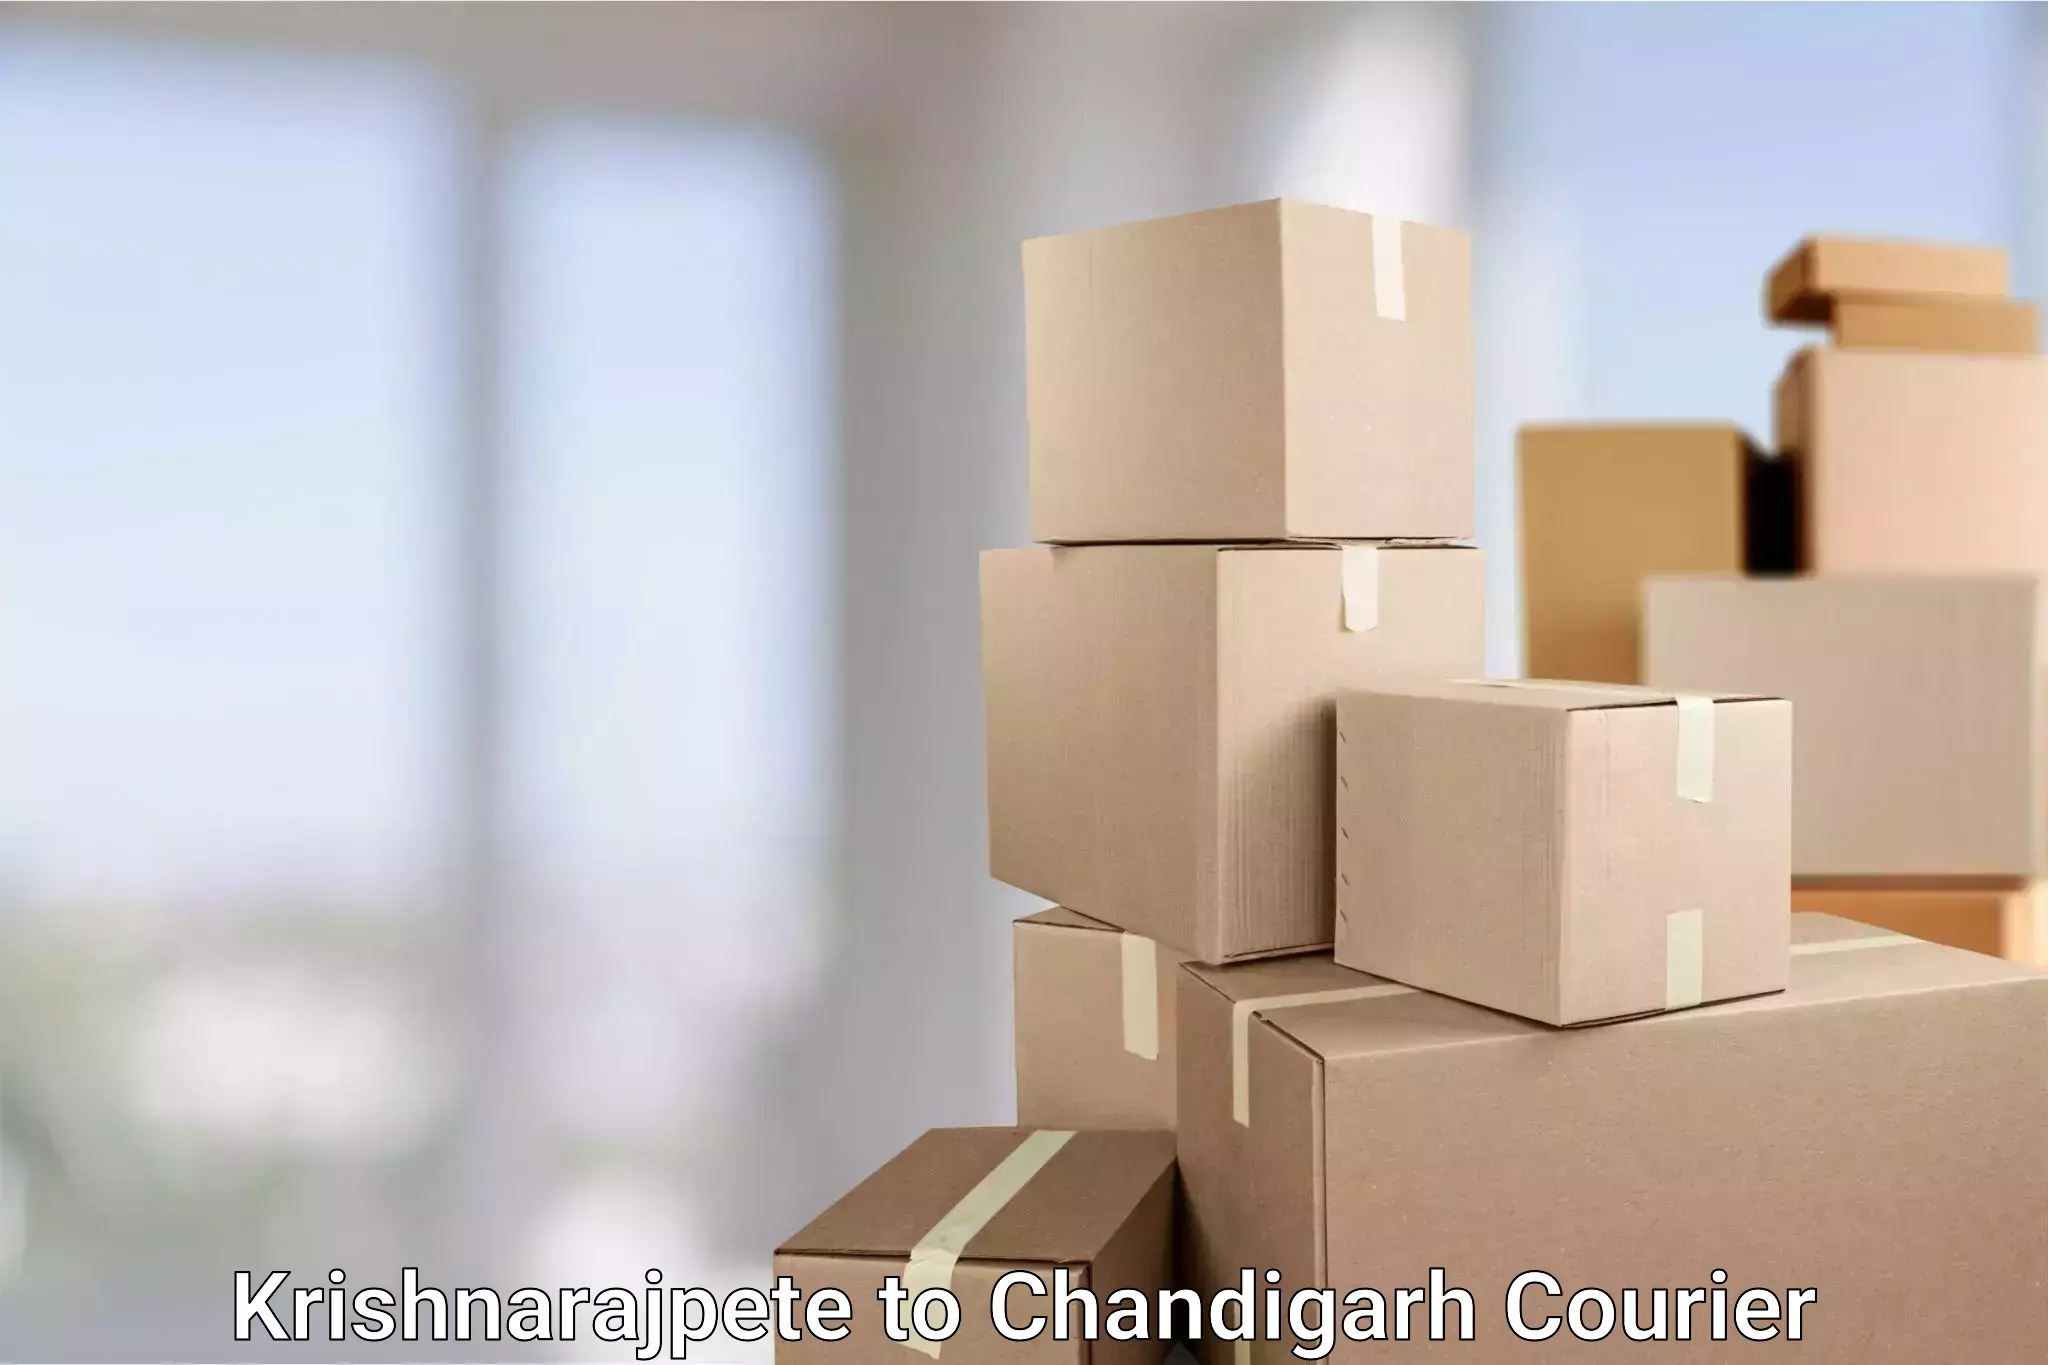 High-speed parcel service Krishnarajpete to Chandigarh